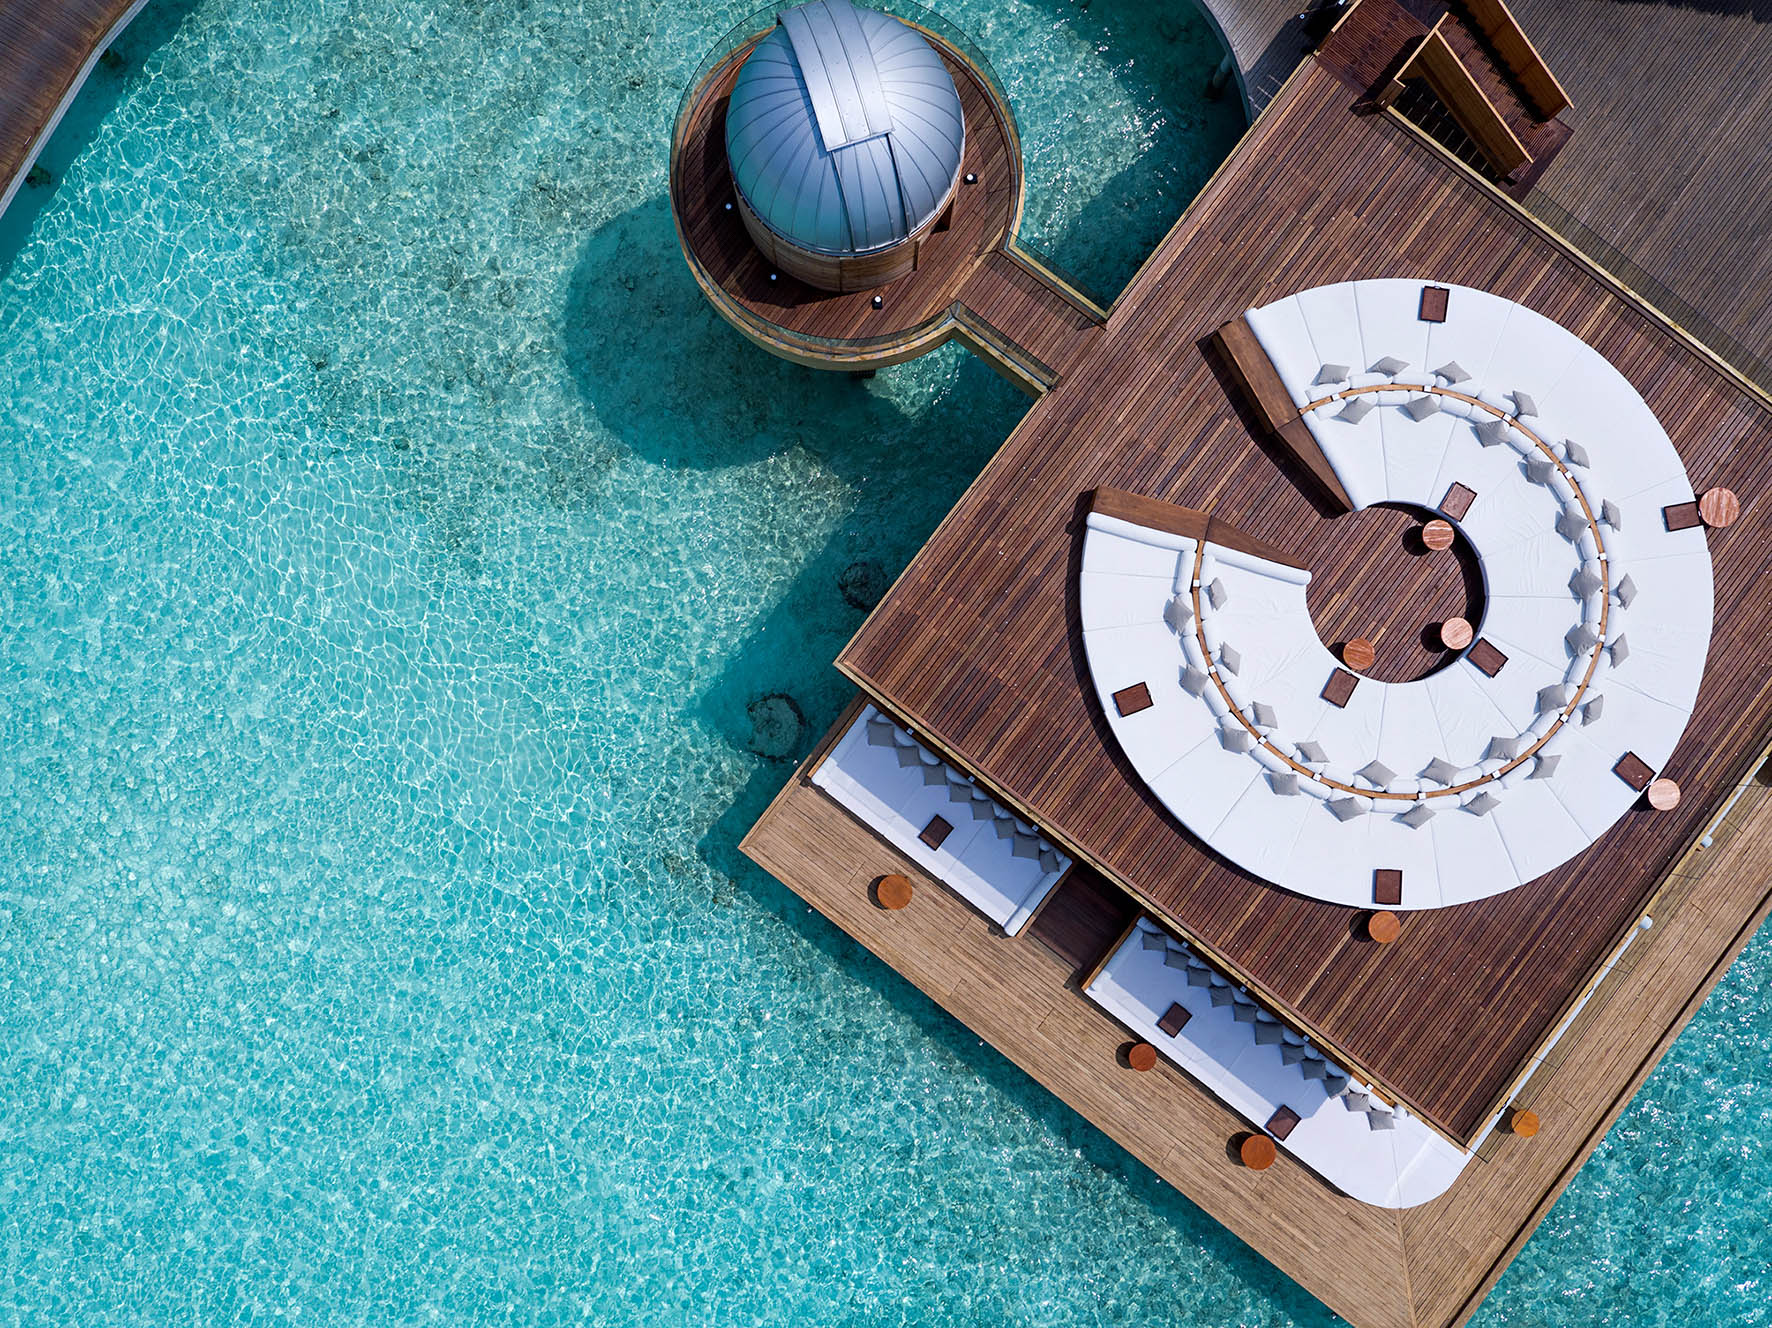 Anantara Kihavah Maldives Villas Resort – Baa Atoll, Maldives – SKY Over Water Observatory and Bar Deck Overhead Aerial View